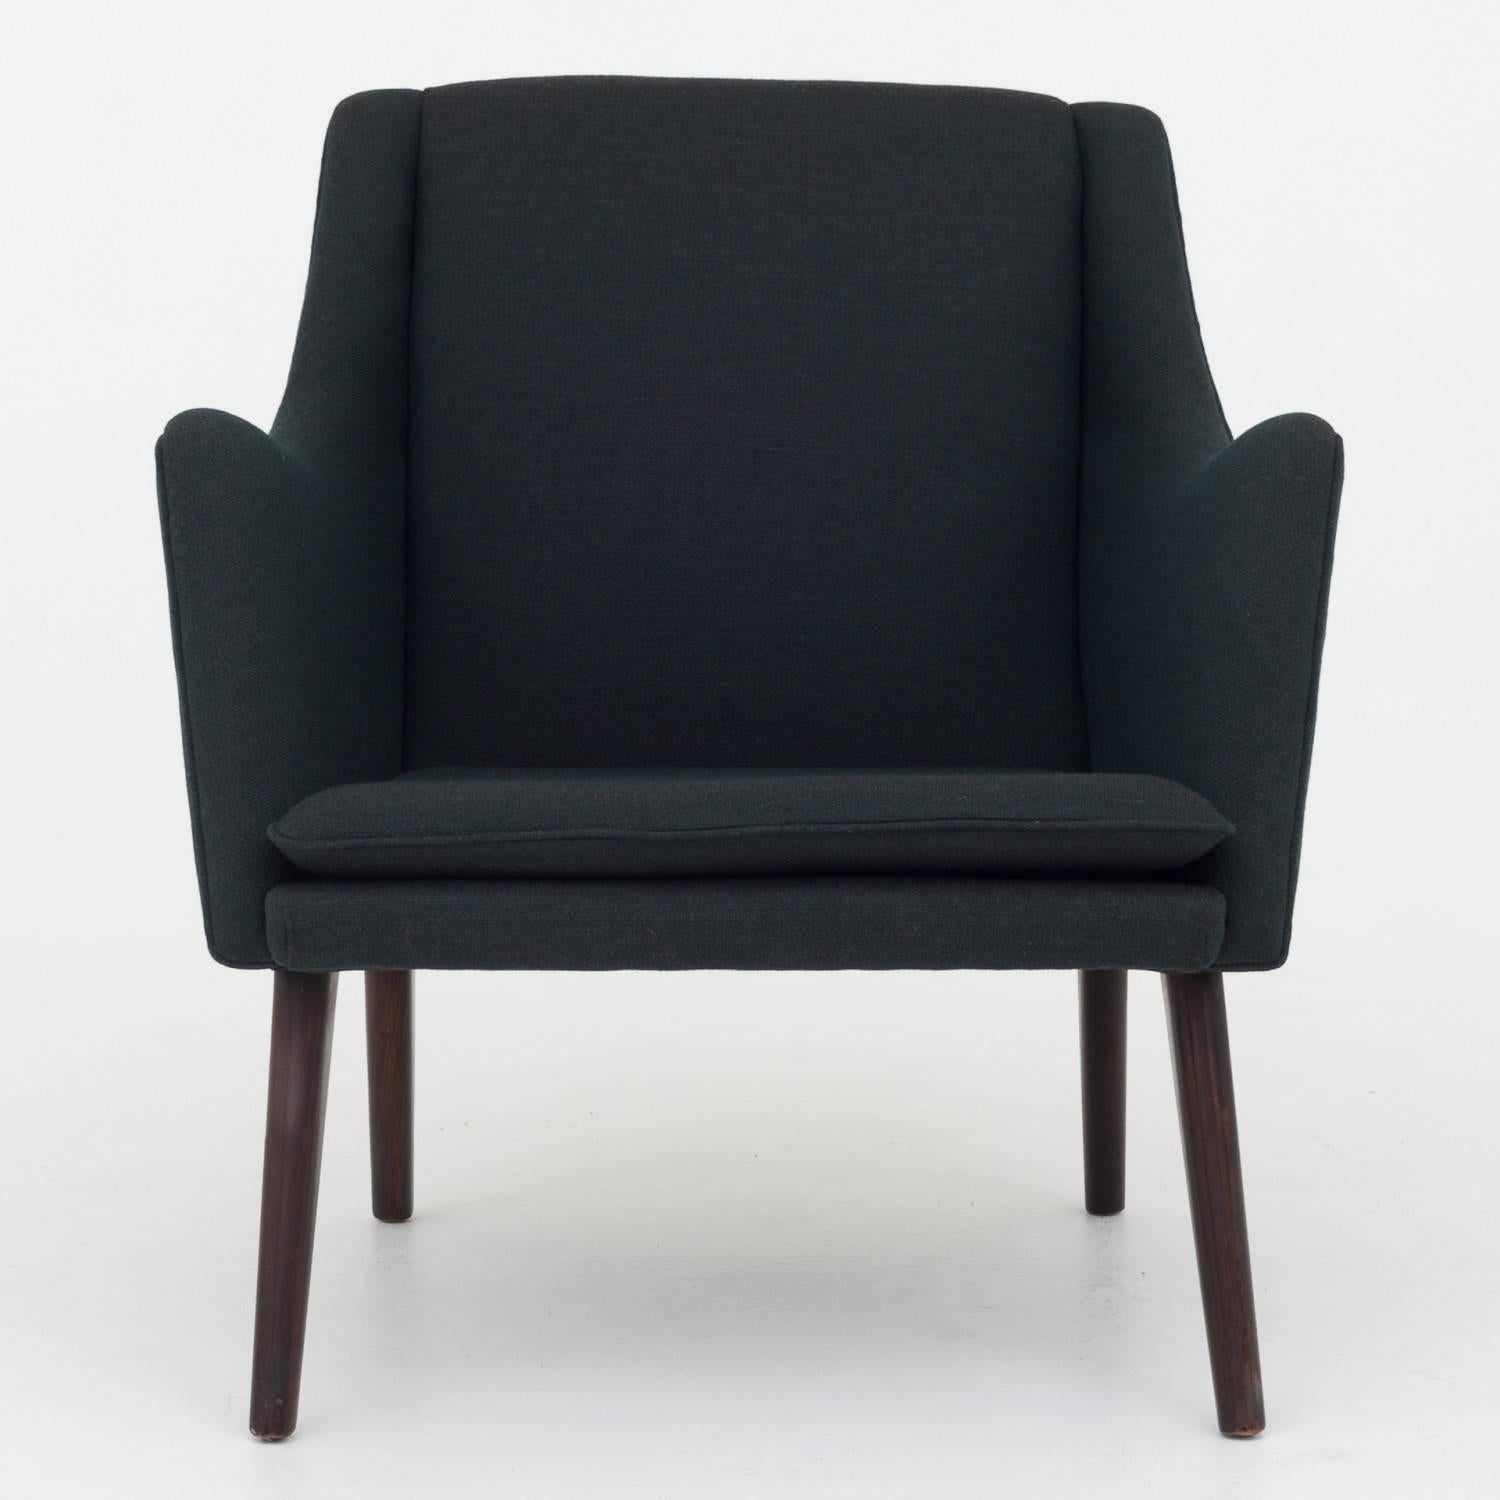 Scandinavian Modern Easy Chair by Tove & Edvard Kindt-Larsen / Gustav Bertelsen For Sale